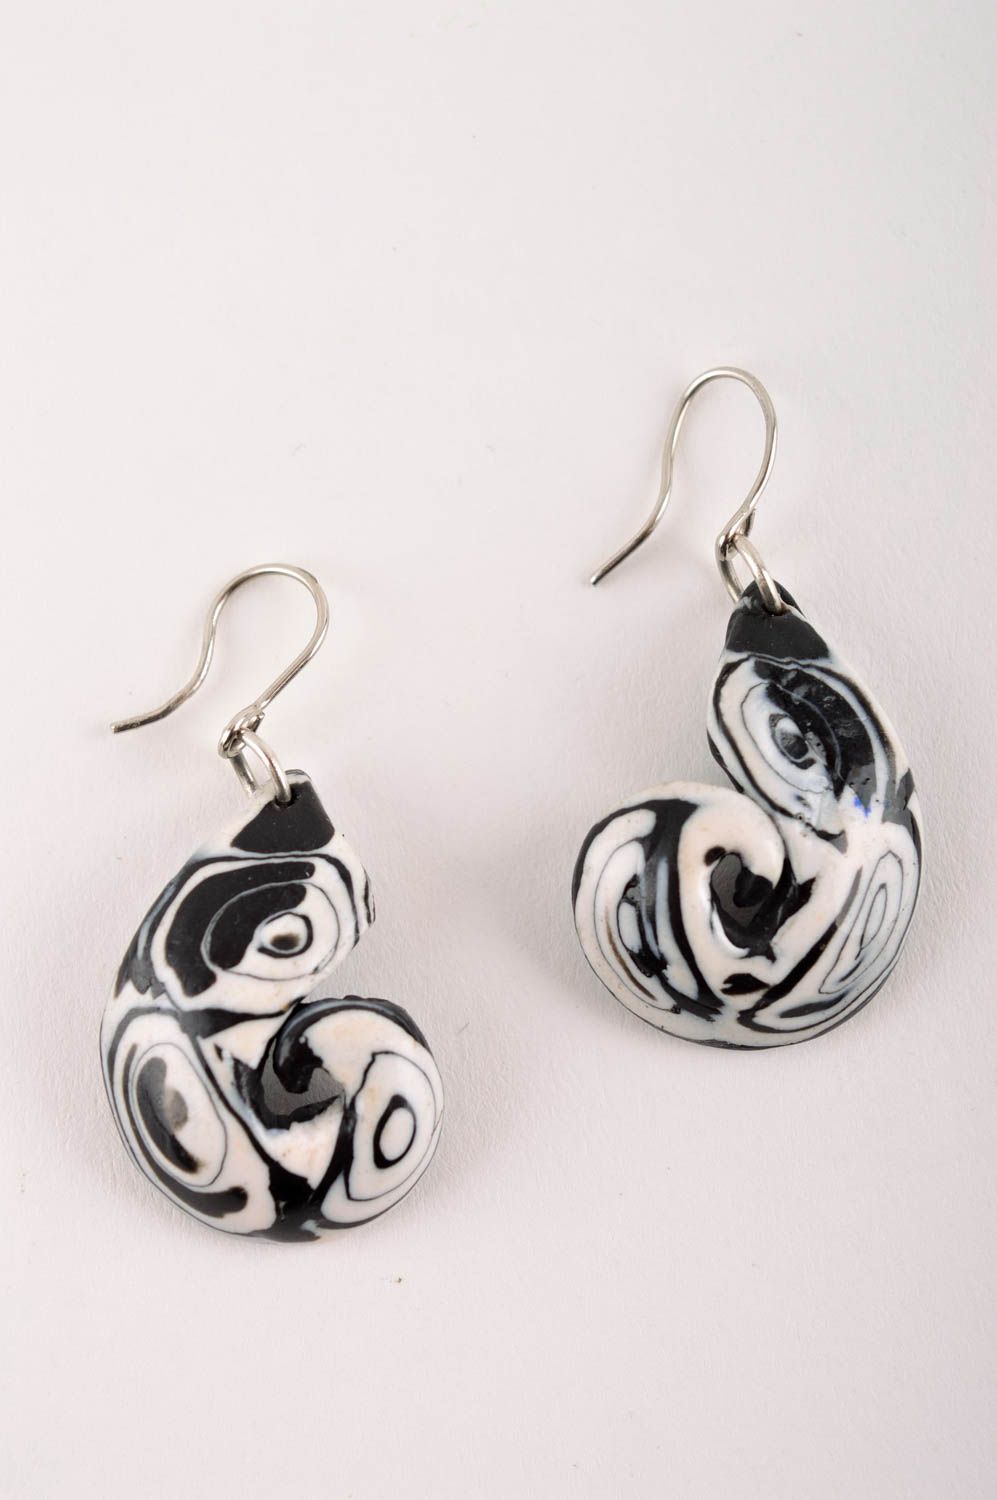 Stylish handmade plastic earrings homemade earrings design accessories for girls photo 3